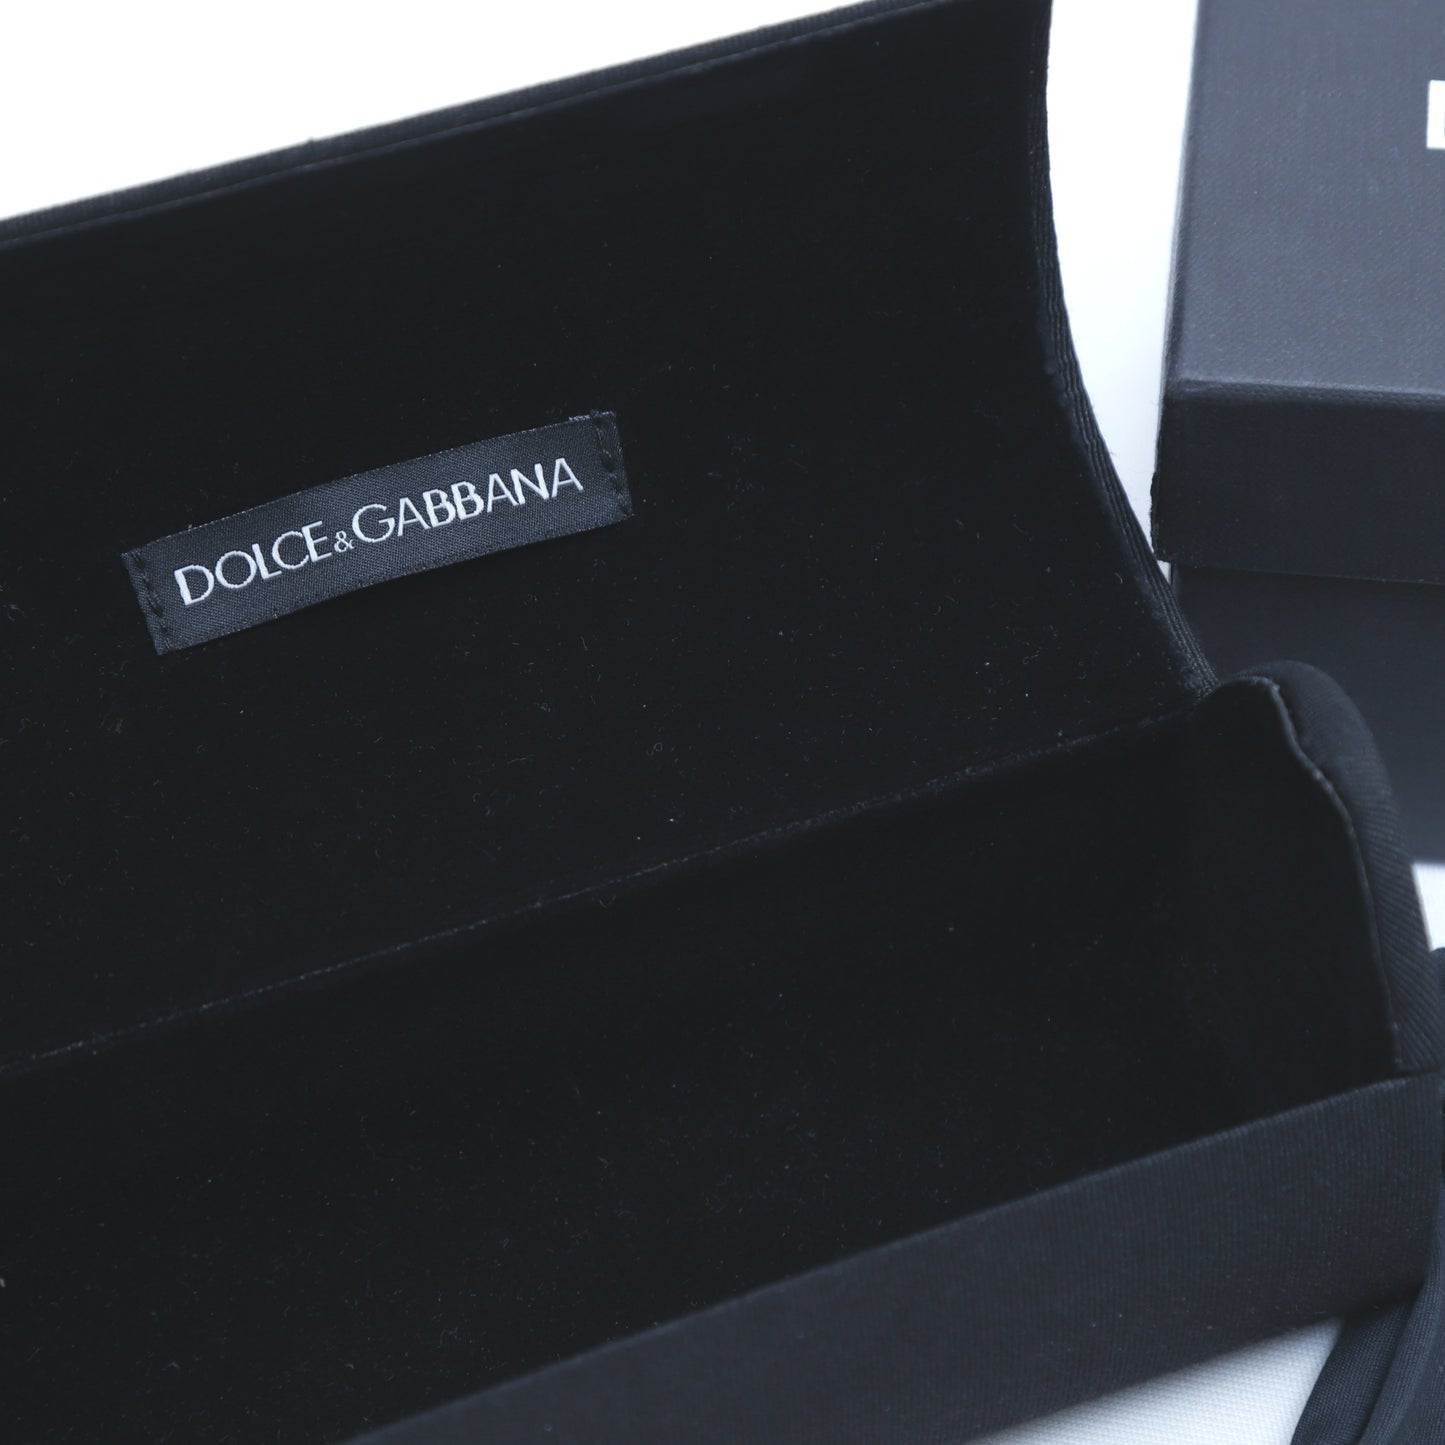 Dolce & Gabbana Wayfarer Sunglasses